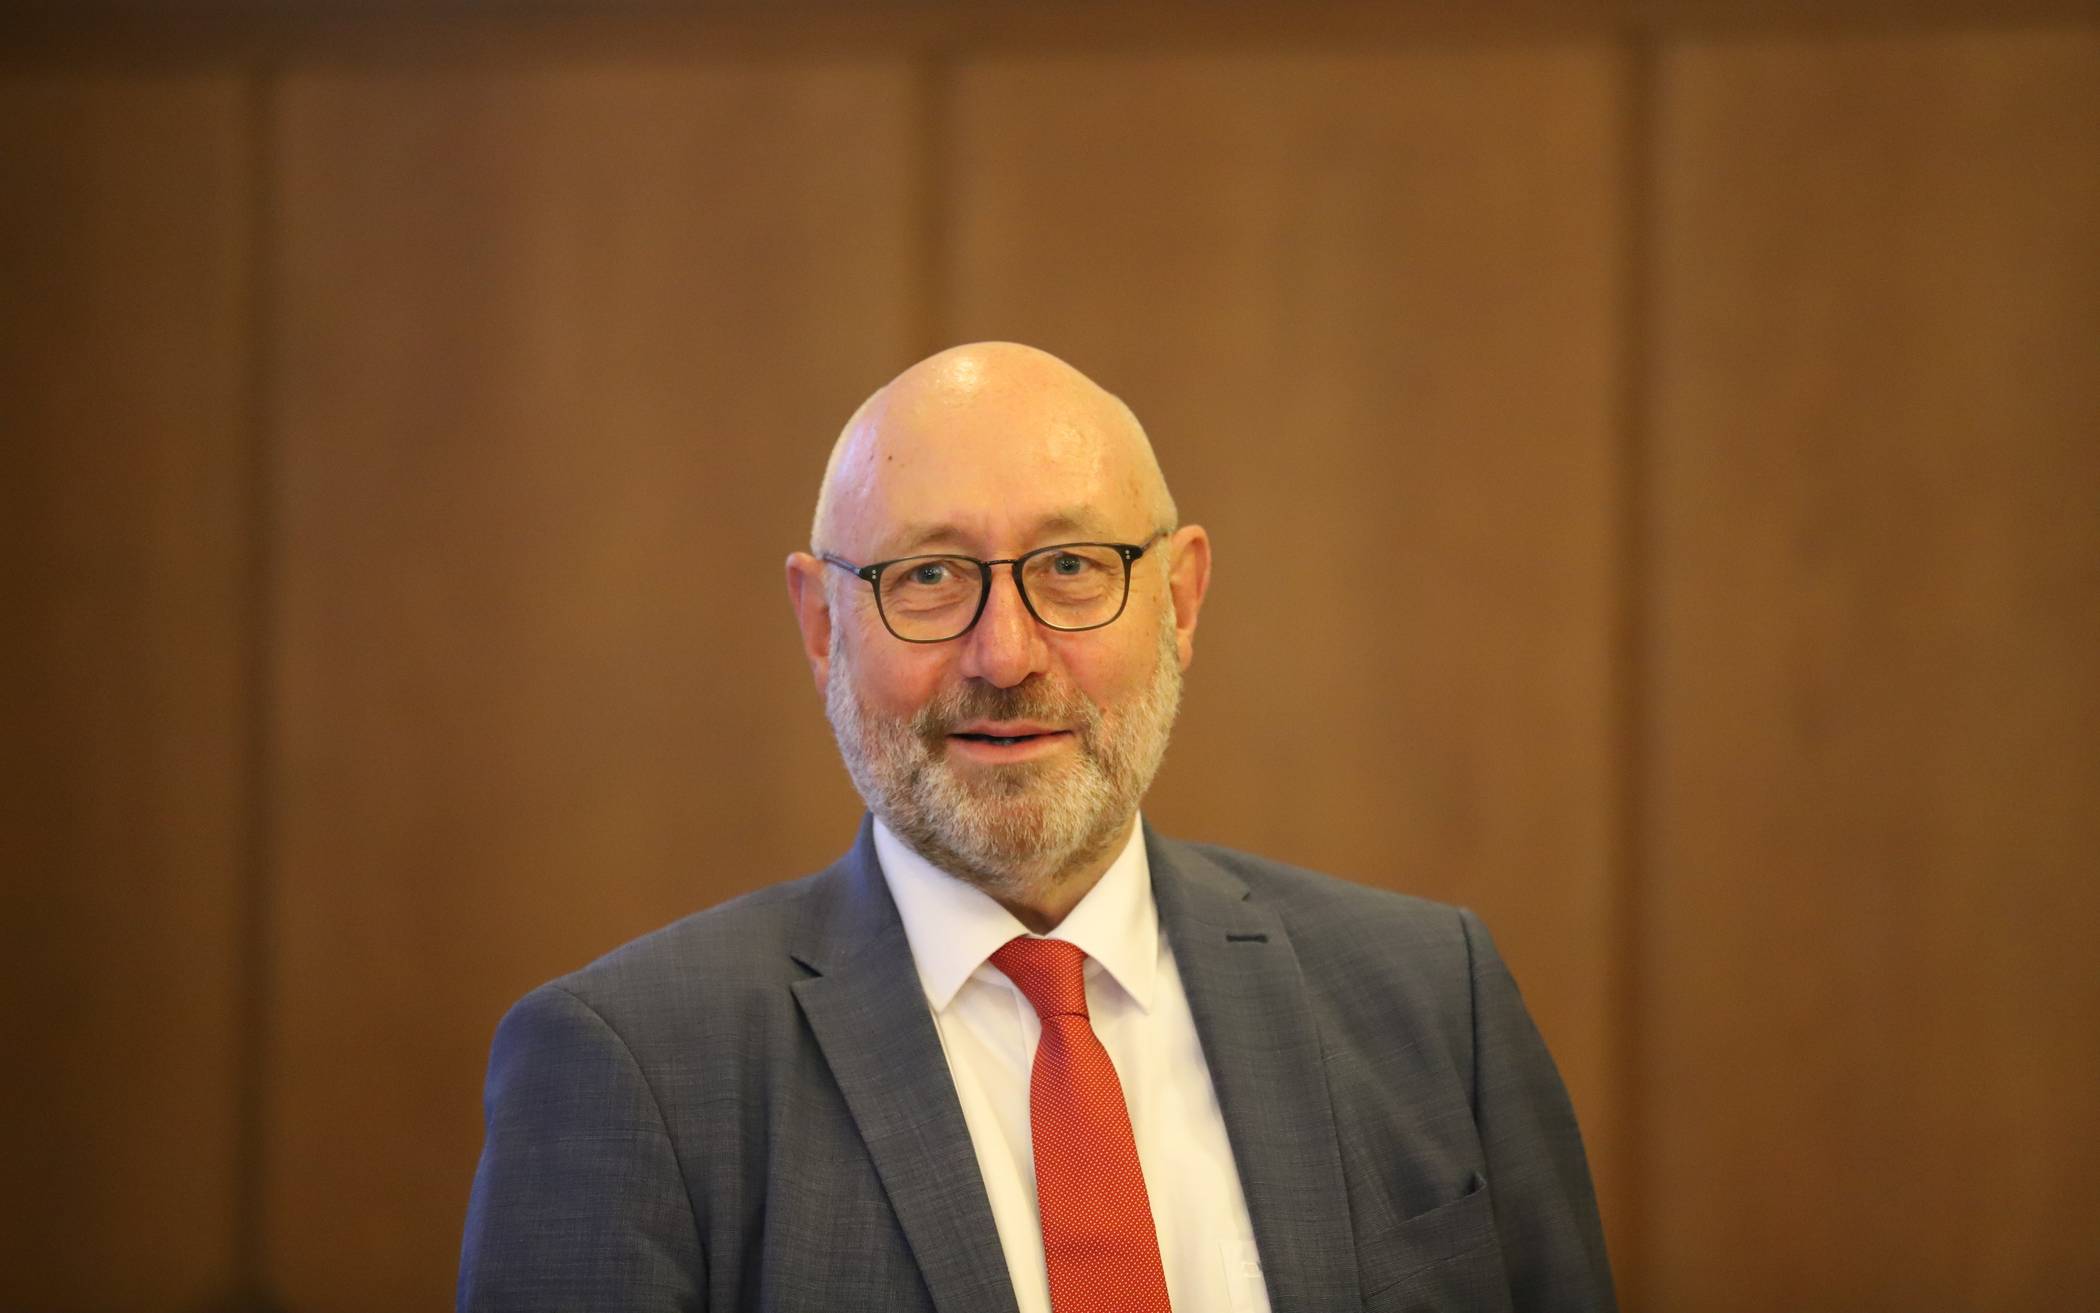  Stadtdirektor Johannes Slawig ist Leiter des Wuppertaler Corona-Krisenstabes. Zur aktuellen Lage sagt er: „Wir wissen, dass das erhebliche Einschränkungen sind. Der Kritik, die es nun sicher geben wird, stellen wir uns.“ 